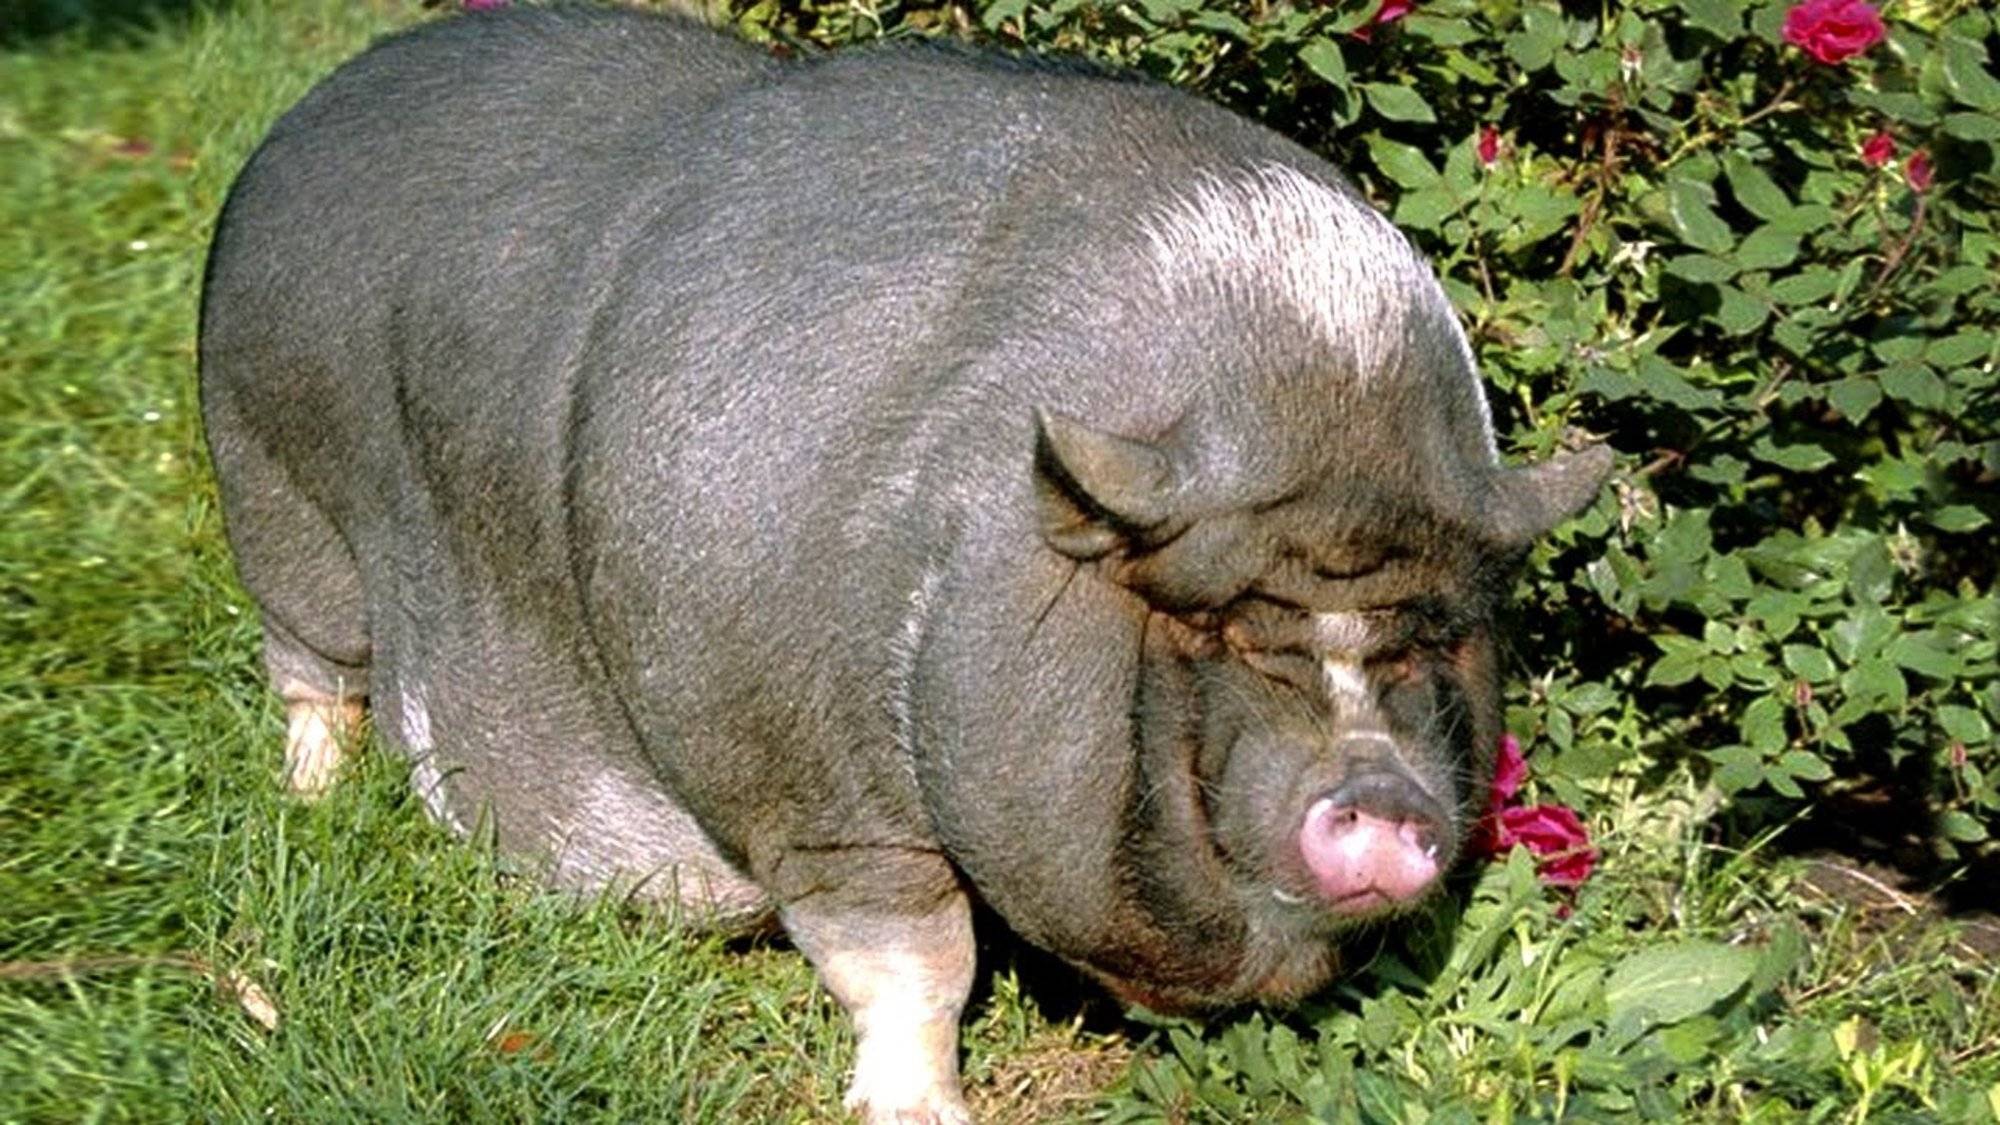 Крупная белая свинья — характеристика, фото и описание, условия содержания, перспективы разведения. | cельхозпортал